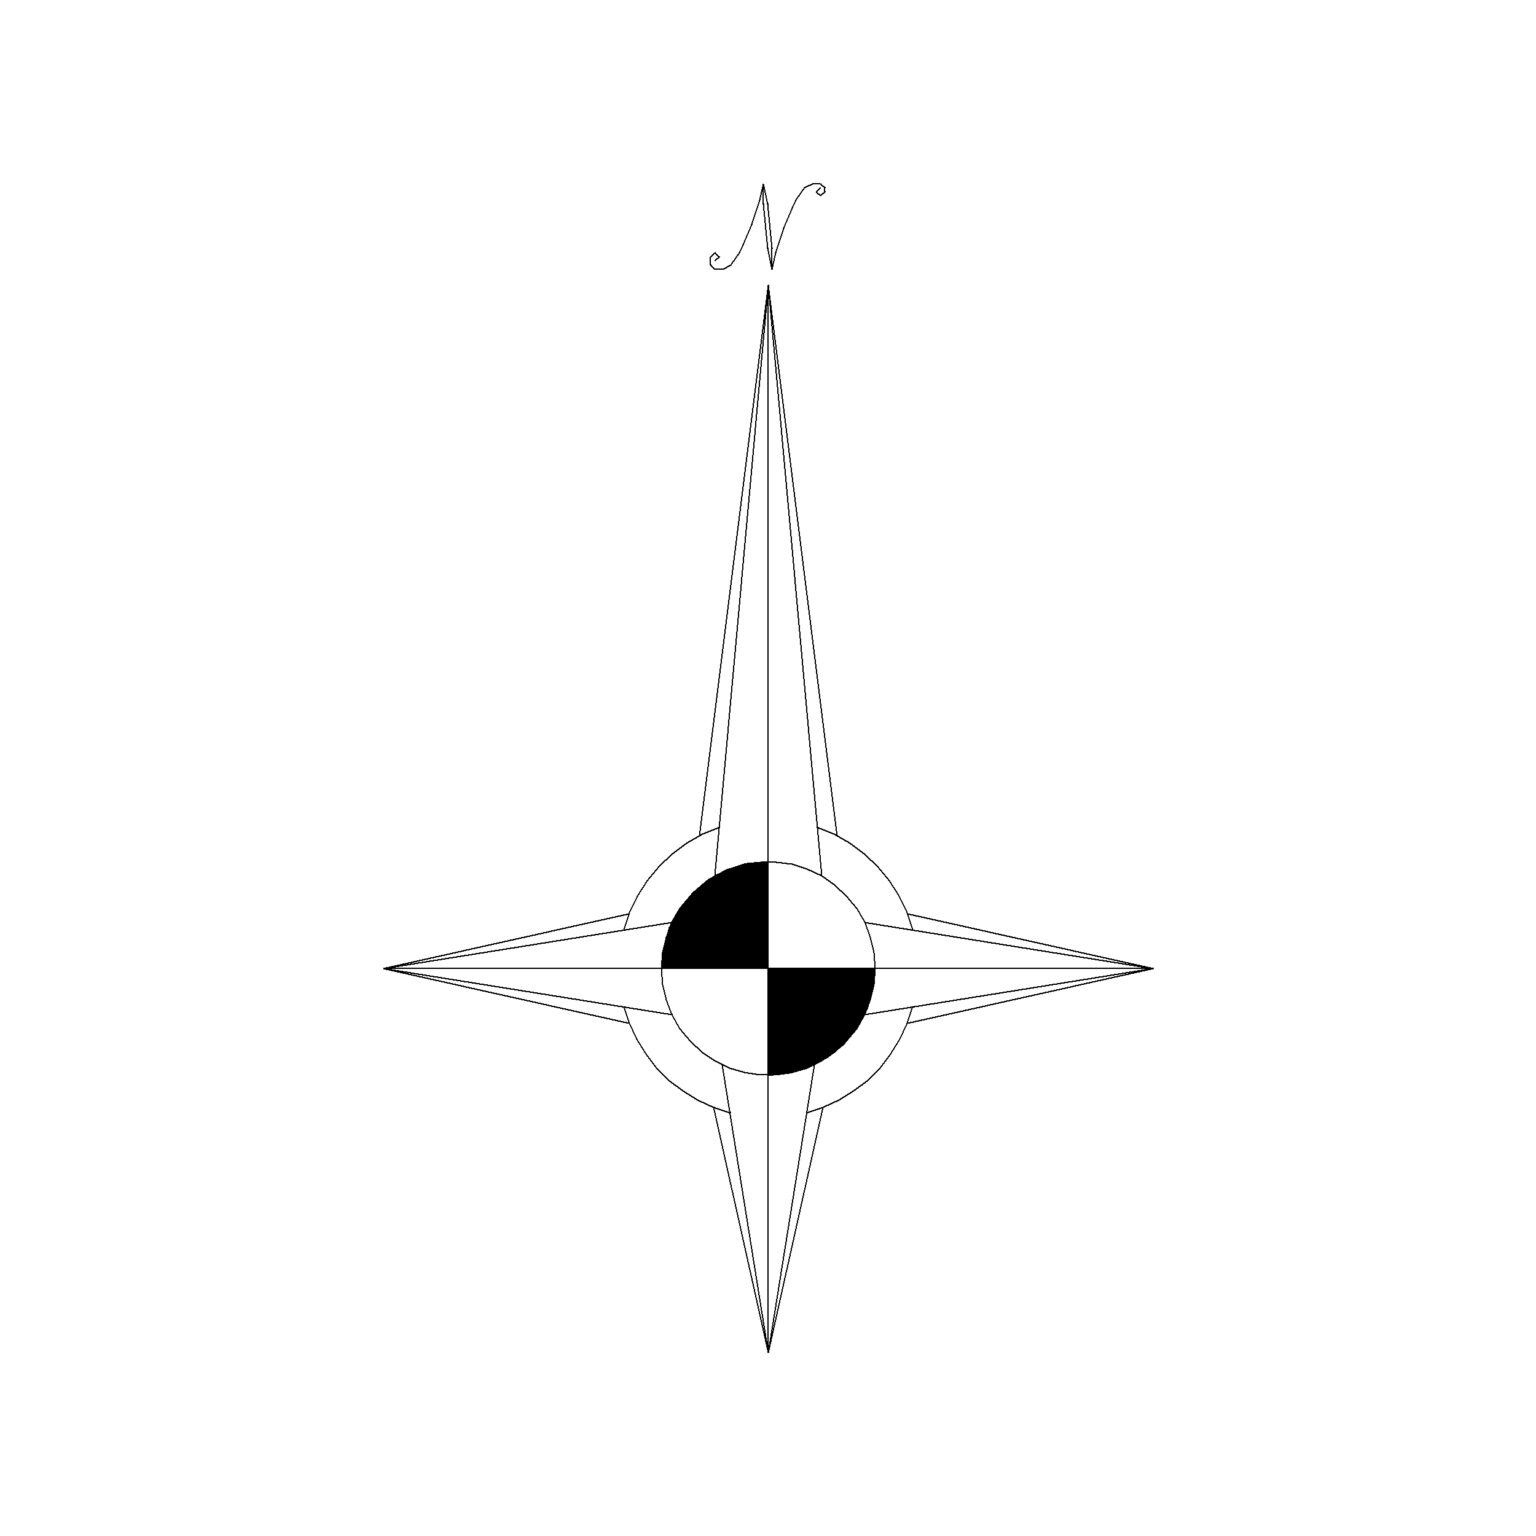 North Arrow Symbol Type 11: 2D CAD - Cadblockdwg